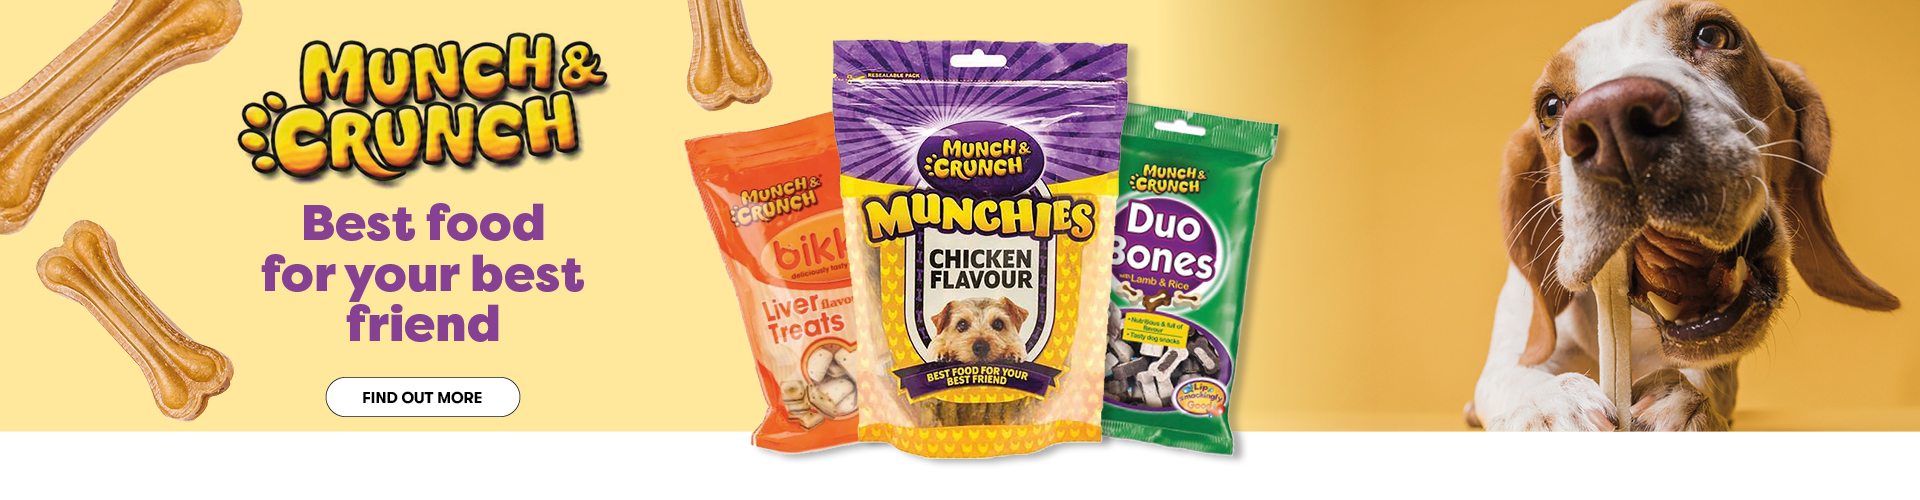 Munch & Crunch Pet Supplies